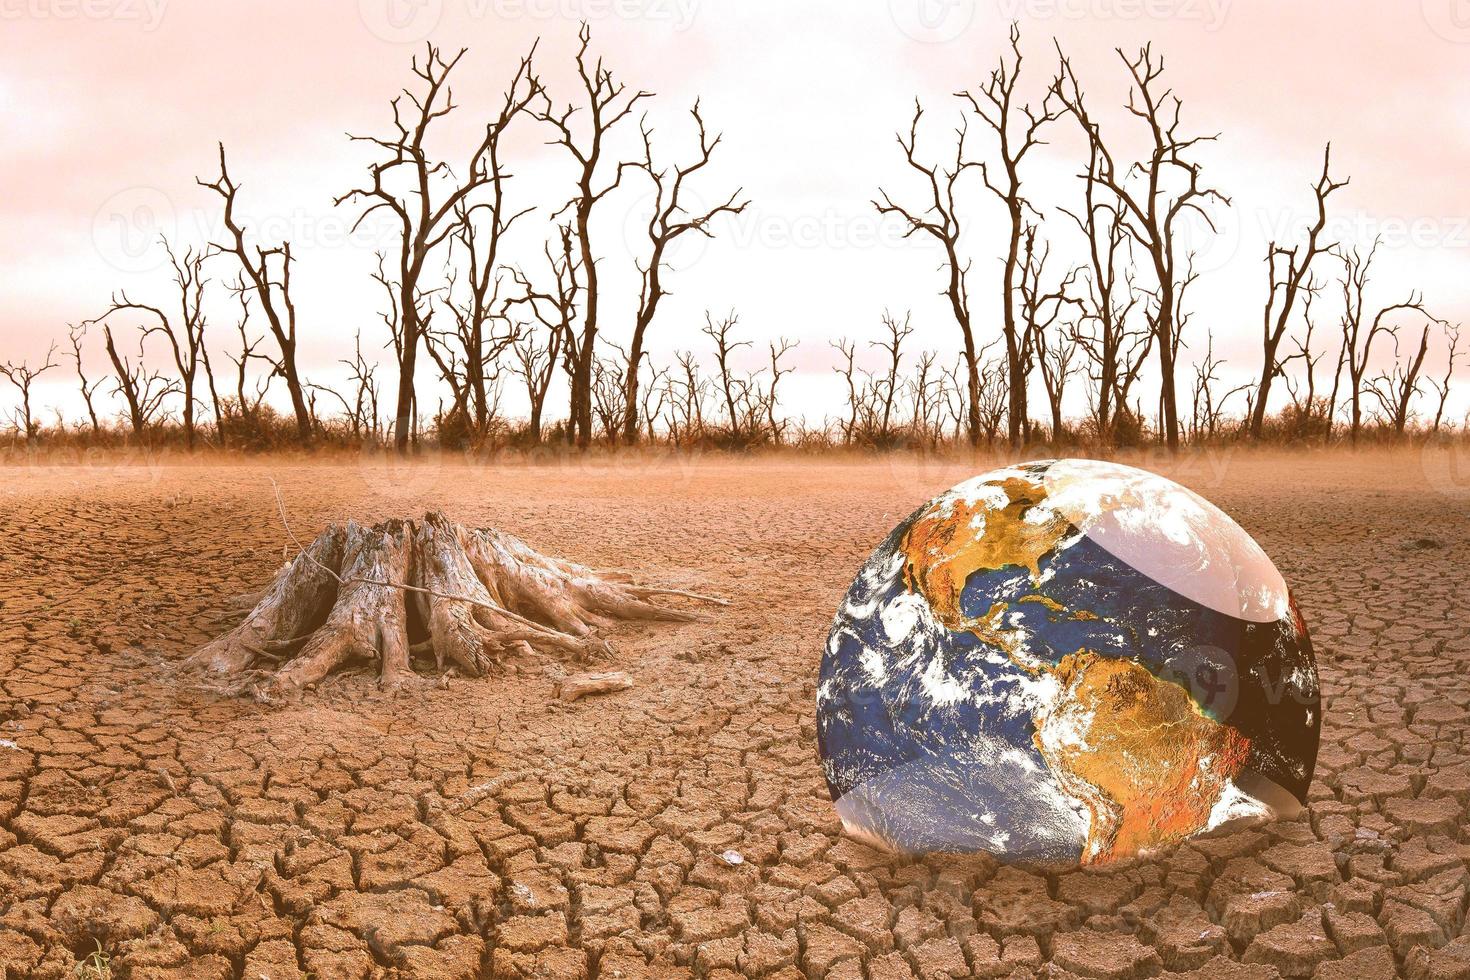 le concept du réchauffement climatique et de la sécheresse et de la pauvreté et des pénuries alimentaires. les sols arides aux climats chauds ont un globe dépourvu d'espaces verts. photo